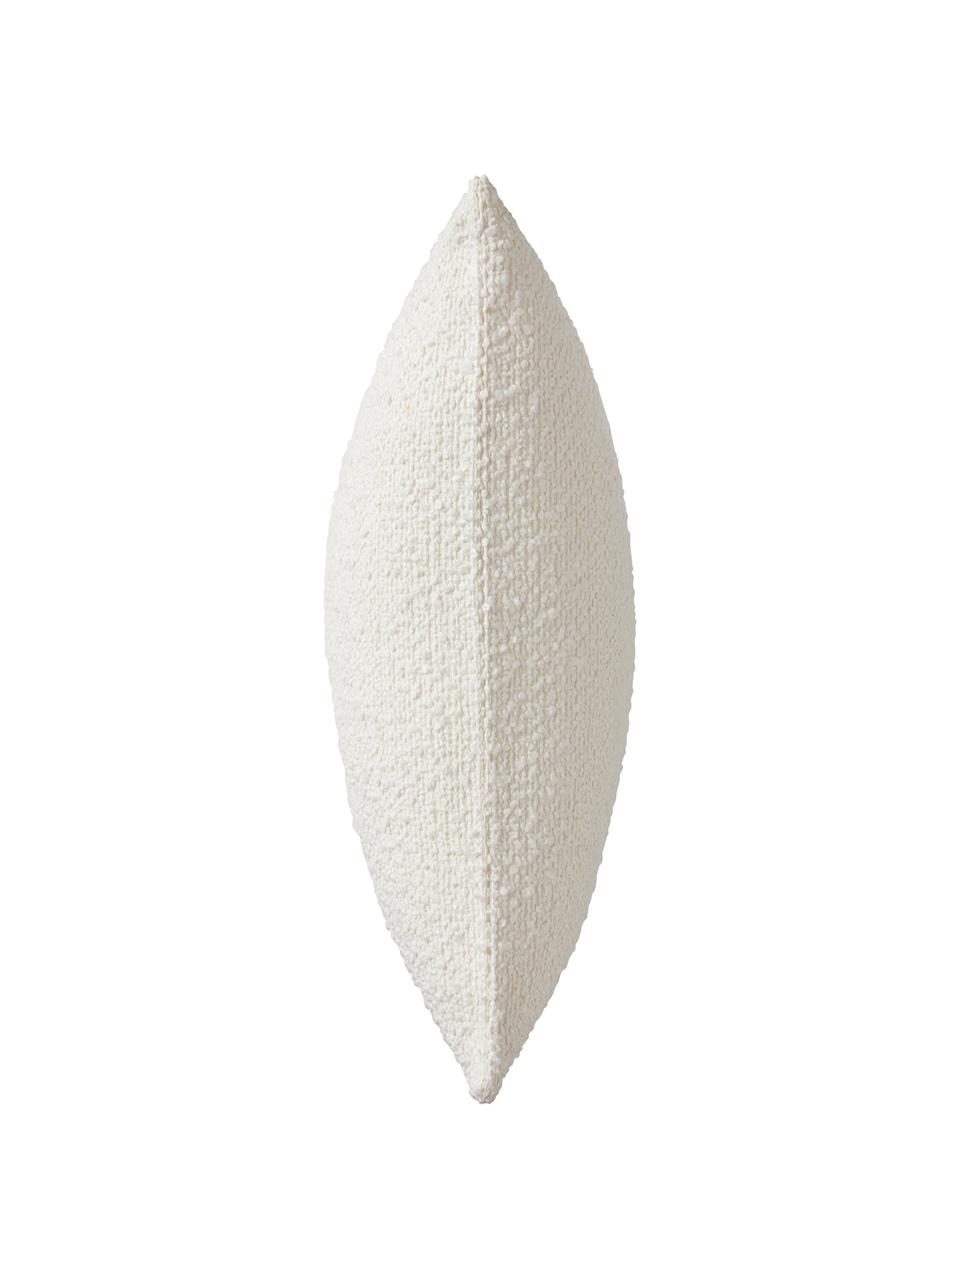 Poszewka na poduszkę bouclé Coda, 97% poliester, 3% akryl, Biały, S 50 x D 50 cm